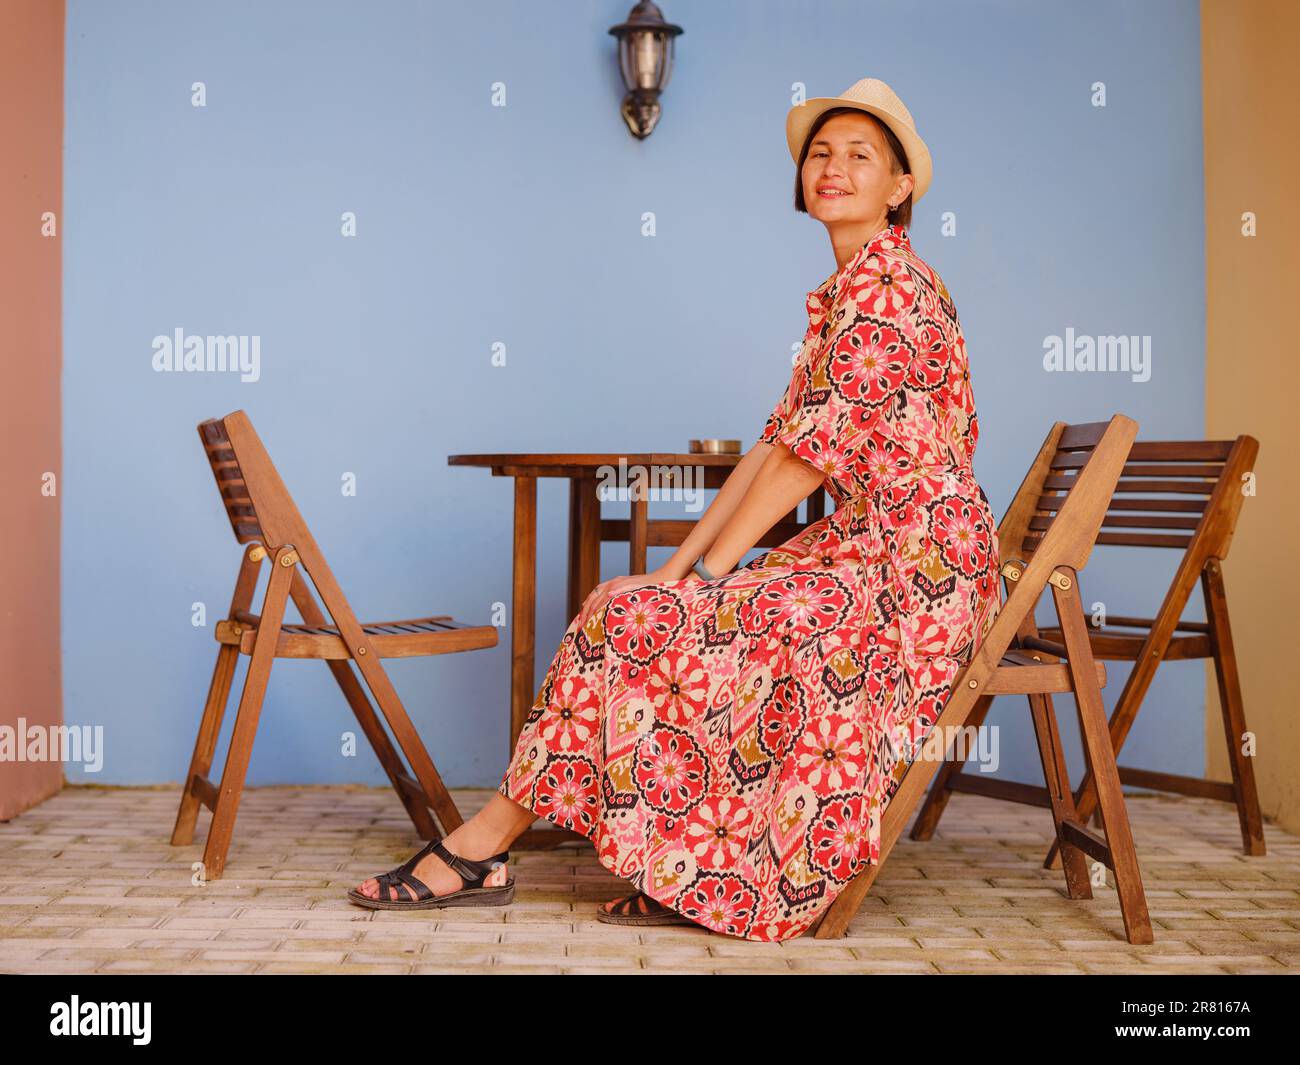 Voyage d'été à l'île de Rhodes, Grèce. Une jeune femme asiatique vêtue  d'une robe rouge ethnique se promène dans les rues colorées de la ville de  Rhodes. Tourisme, vacances, voyage en solo